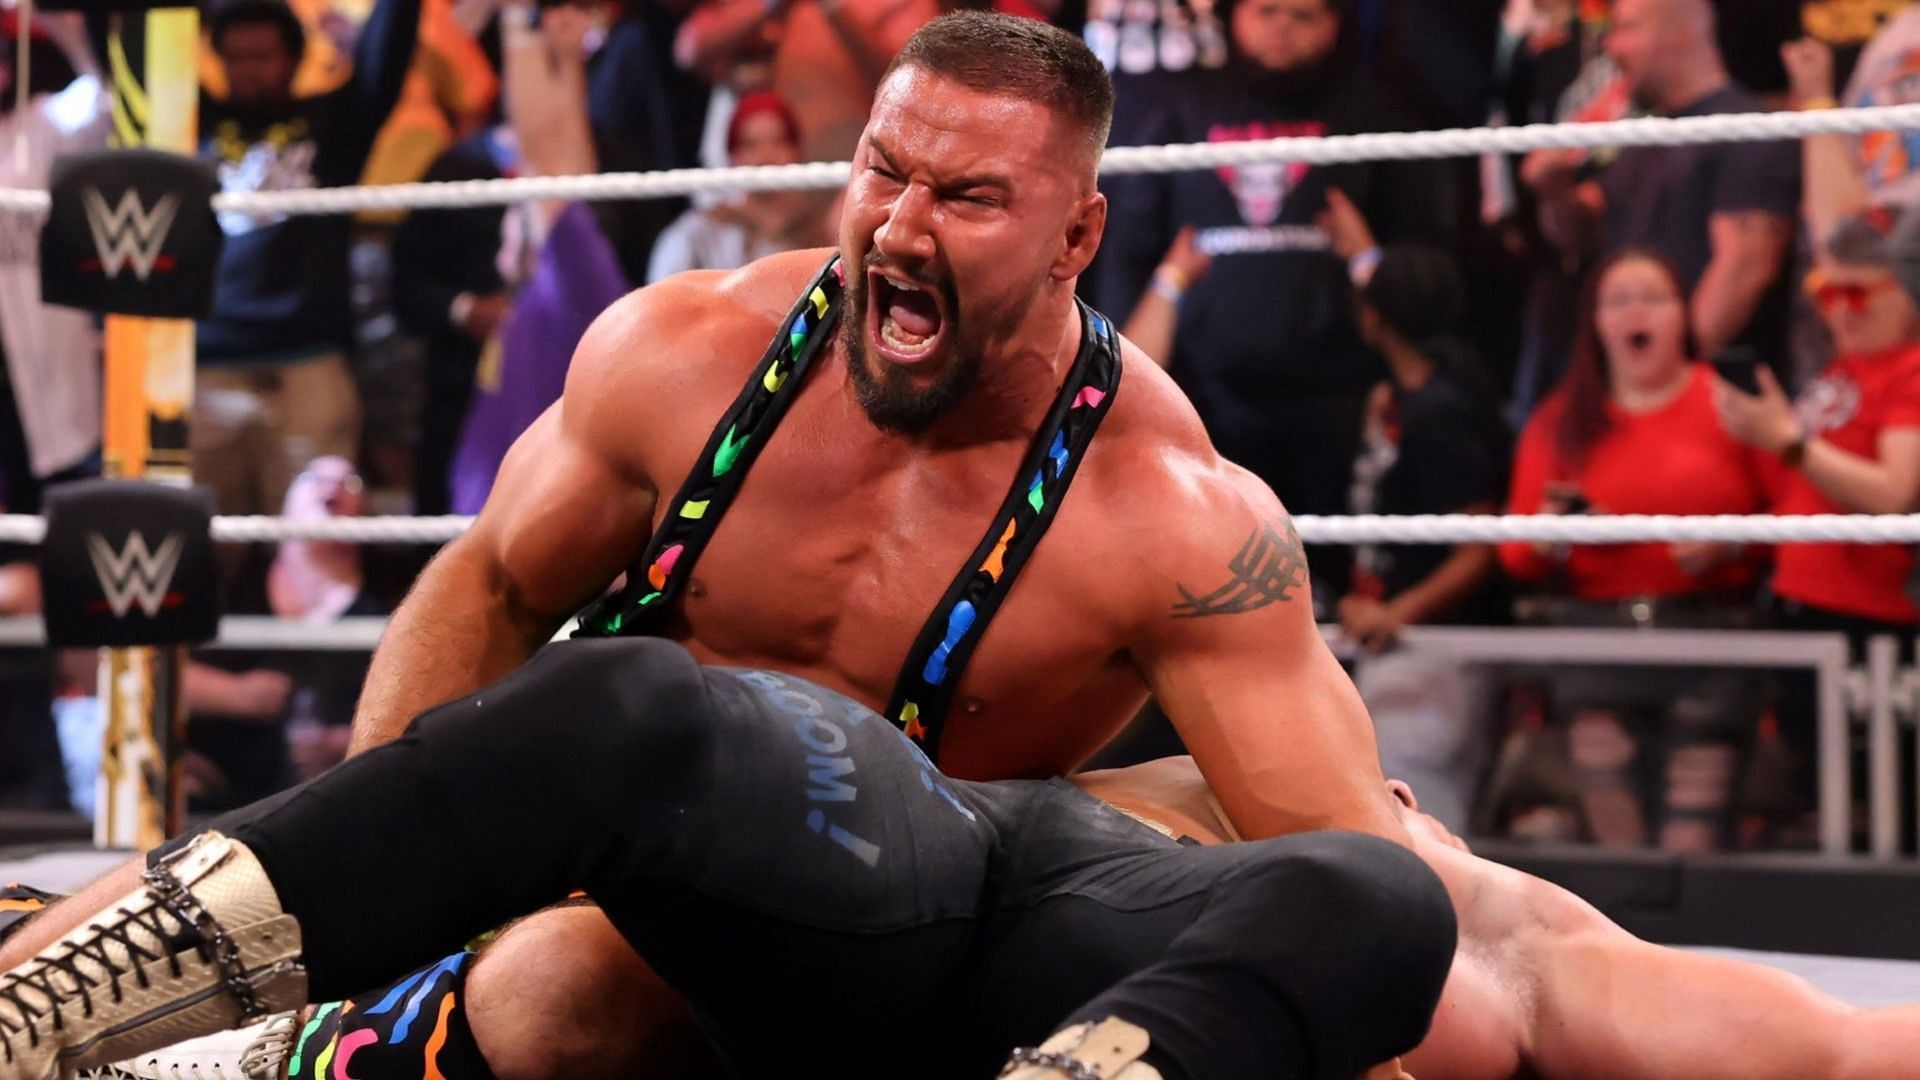 Bron Breakker stays in control on WWE NXT